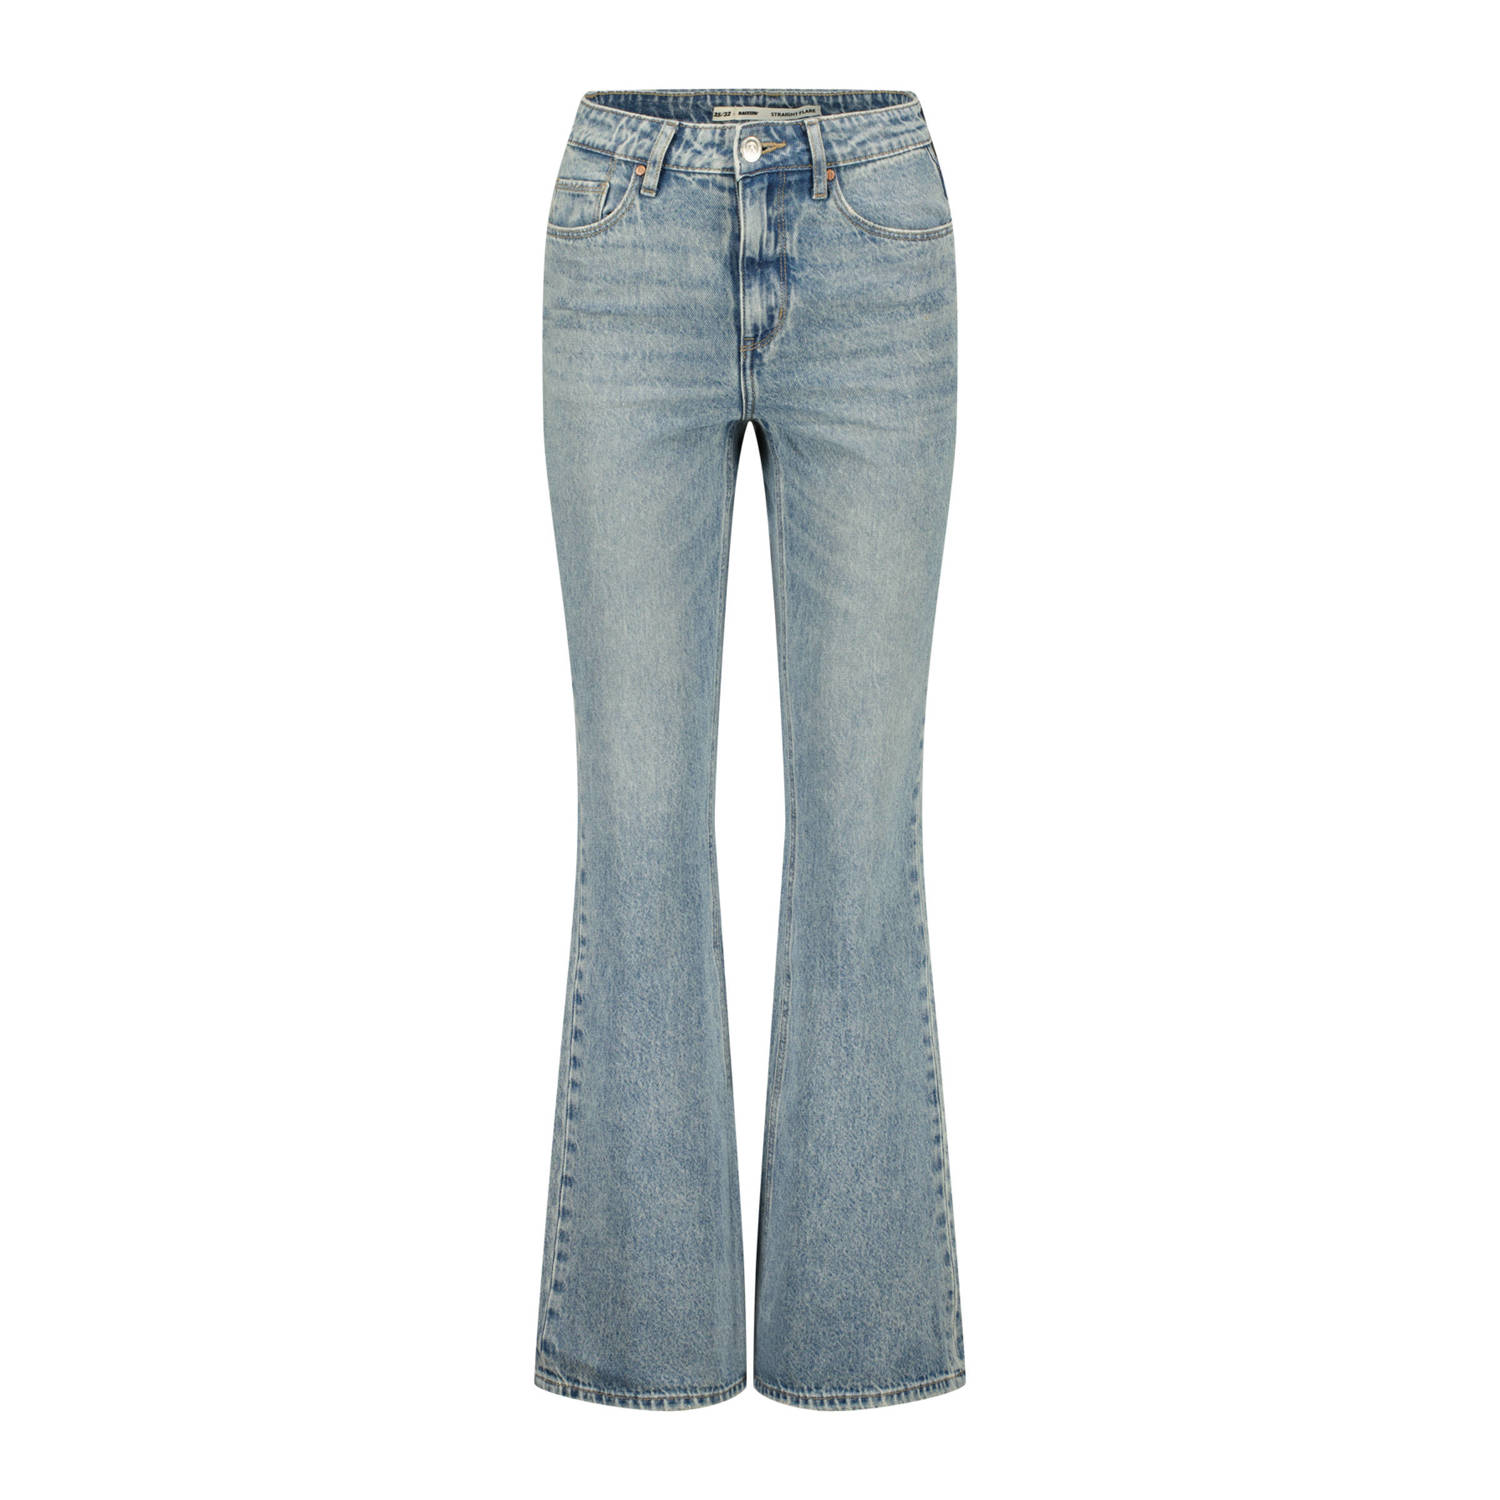 Raizzed high waist flared jeans Sunset flare light blue denim